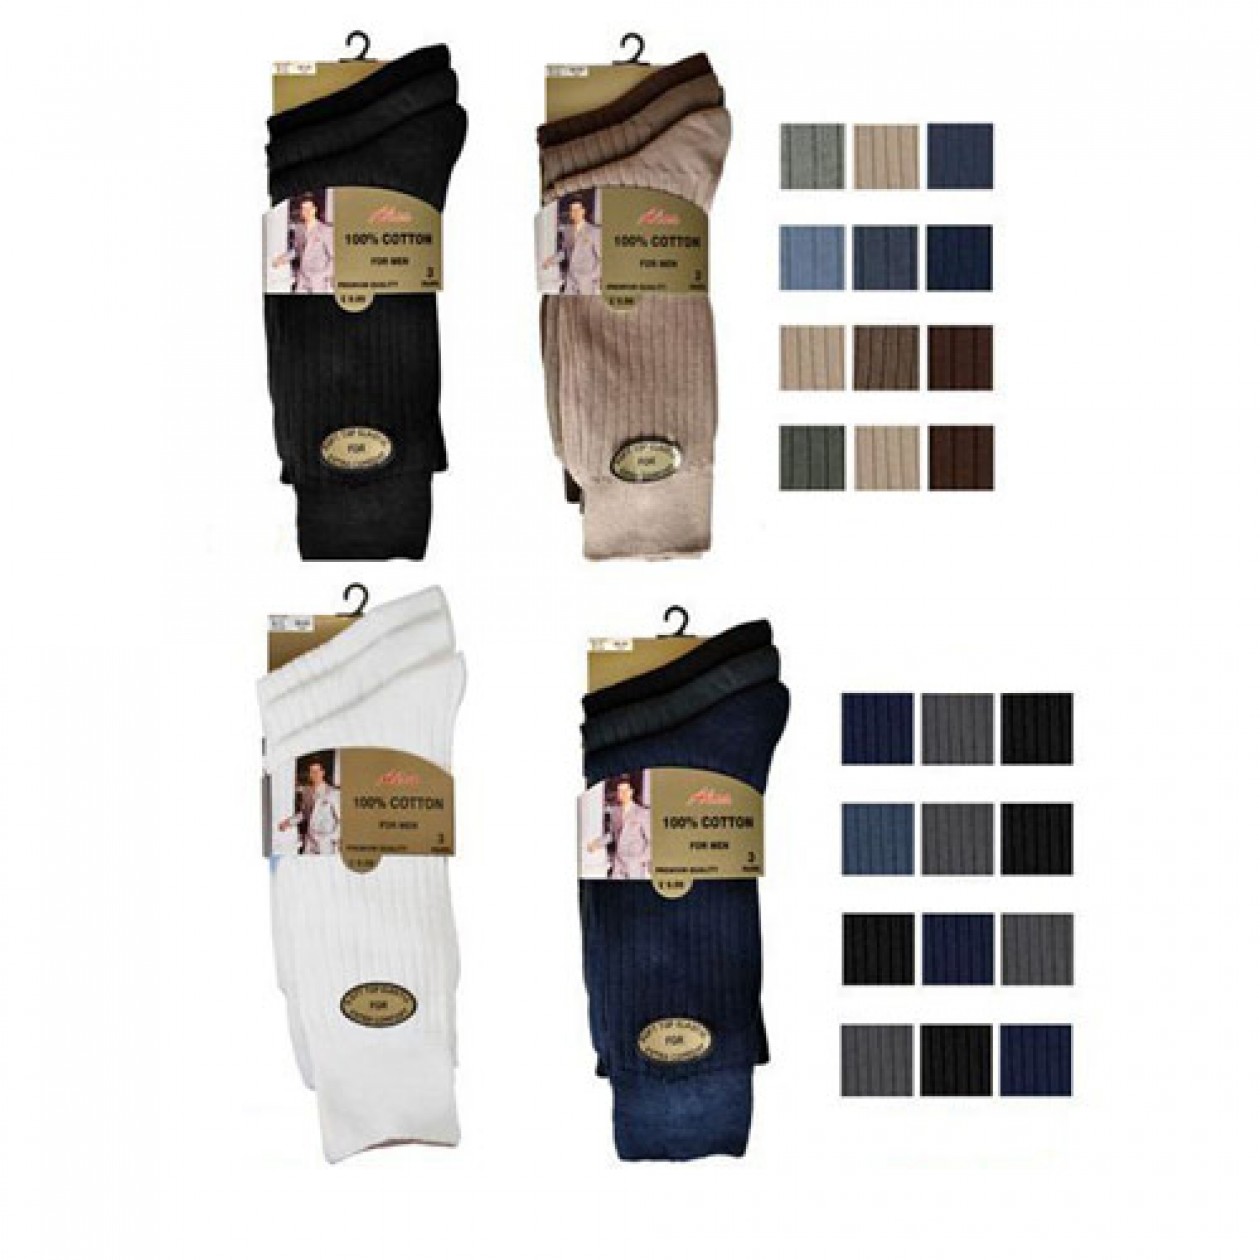 100% Cotton Socks Gold Men 3 Pack